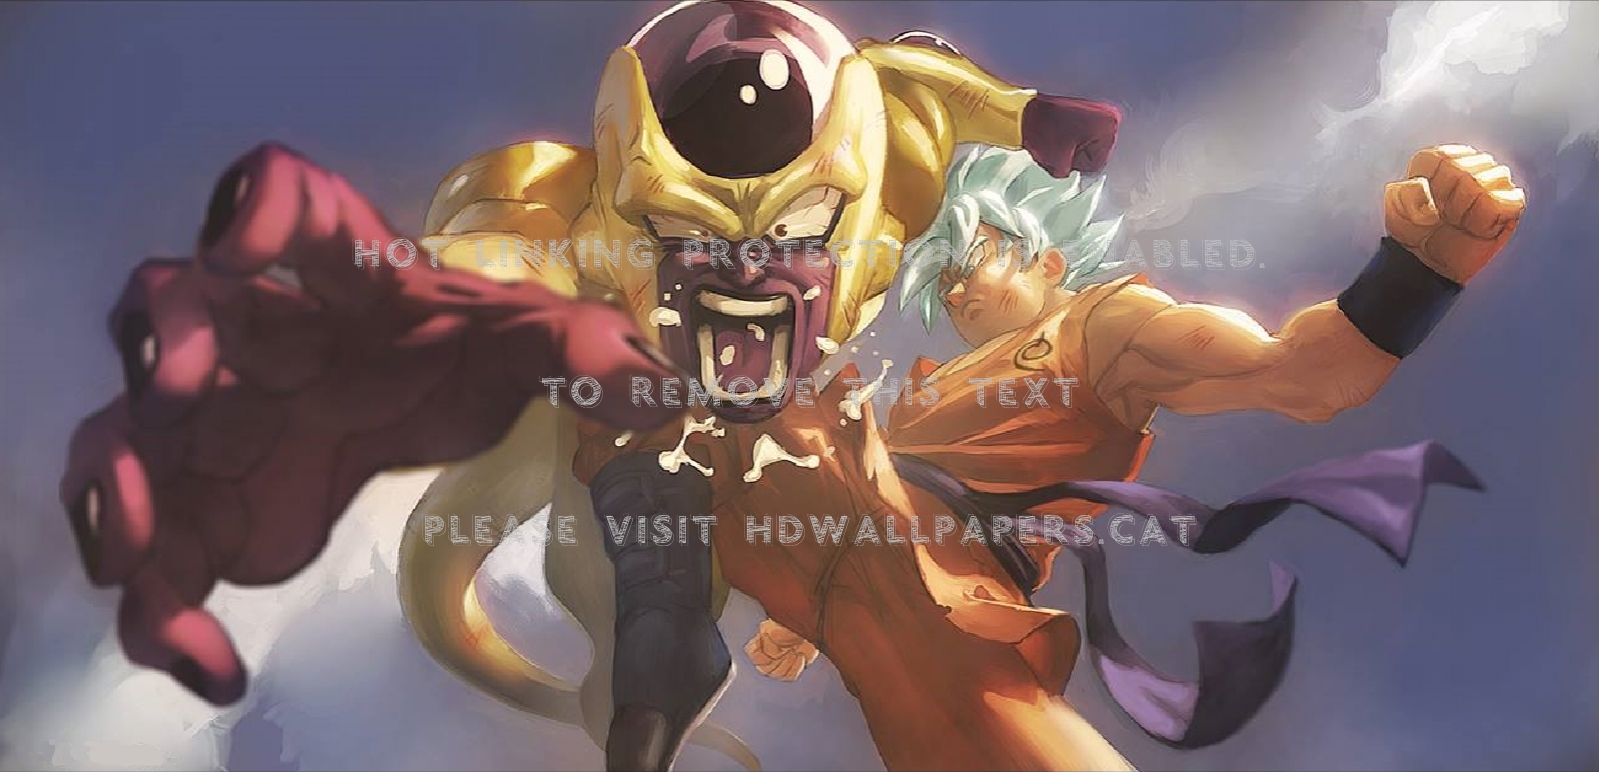 Son Goku Vs Frieza , HD Wallpaper & Backgrounds